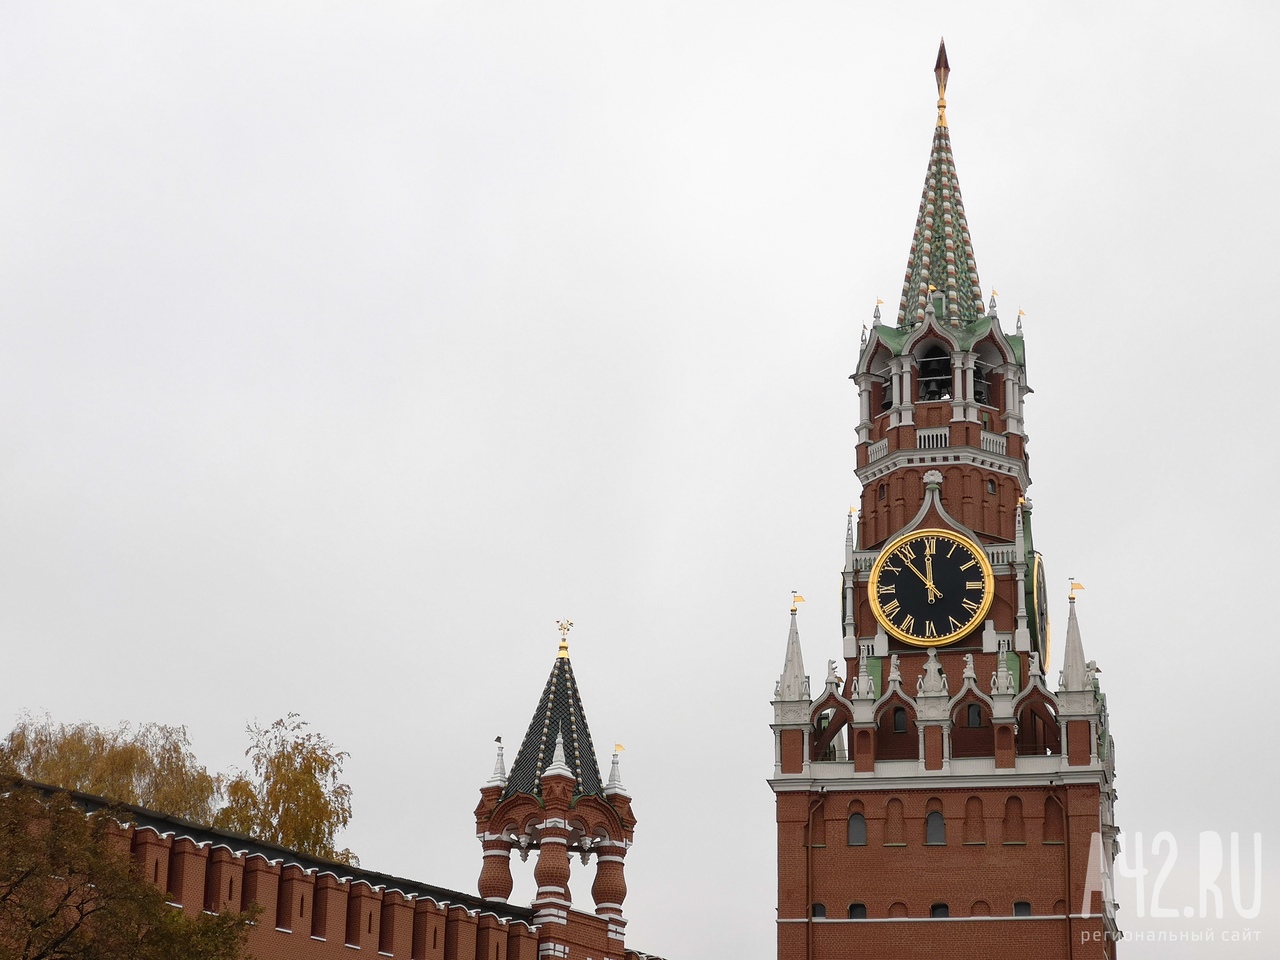  В Кремле прокомментировали решение Норвегии запретить въезд россиянам